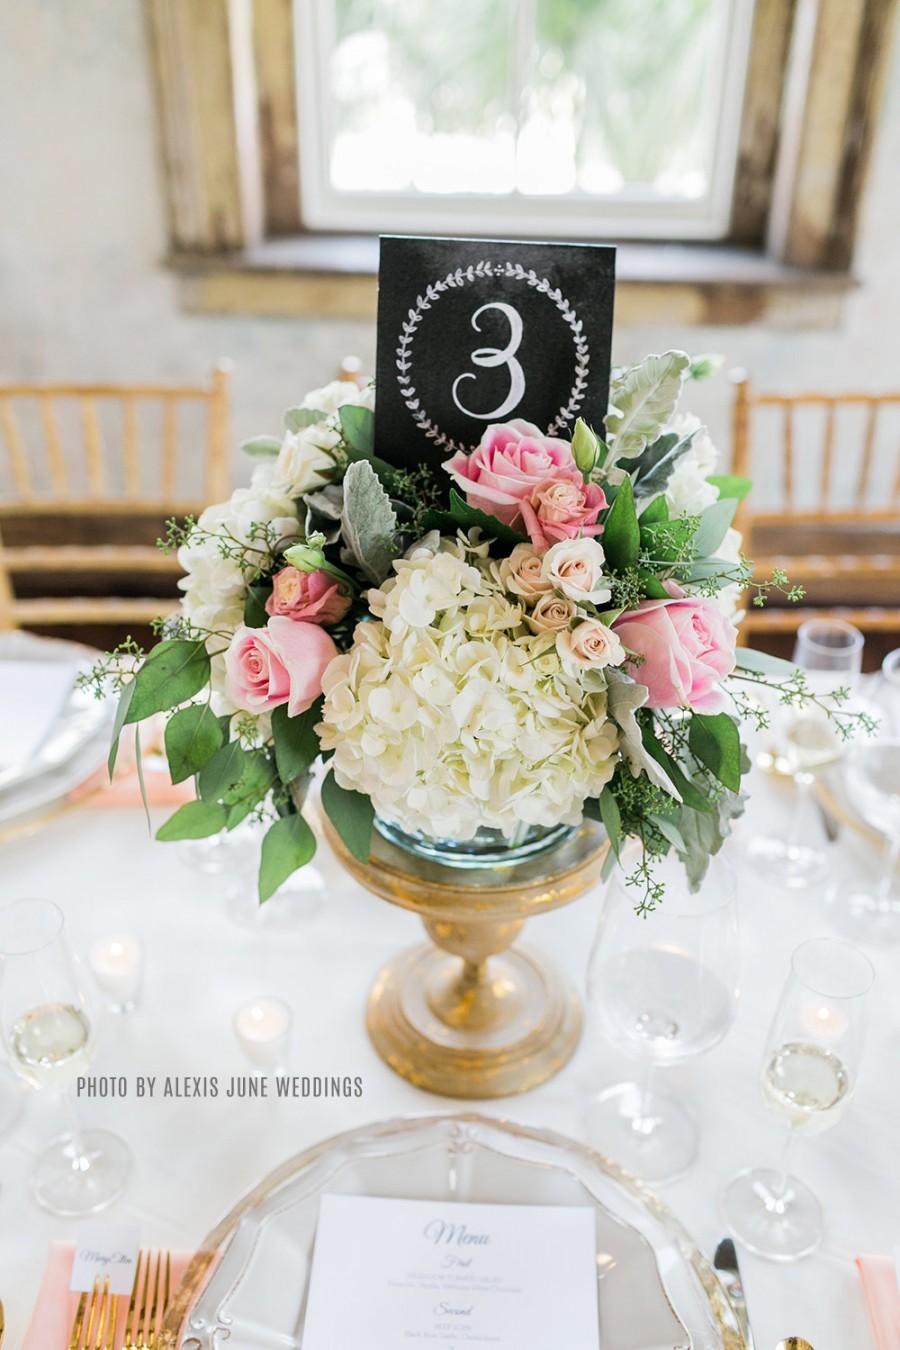 زفاف - Wedding Table Numbers - Vintage Wedding Table Numbers - Tented Table Numbers- Chalkboard Table Numbers